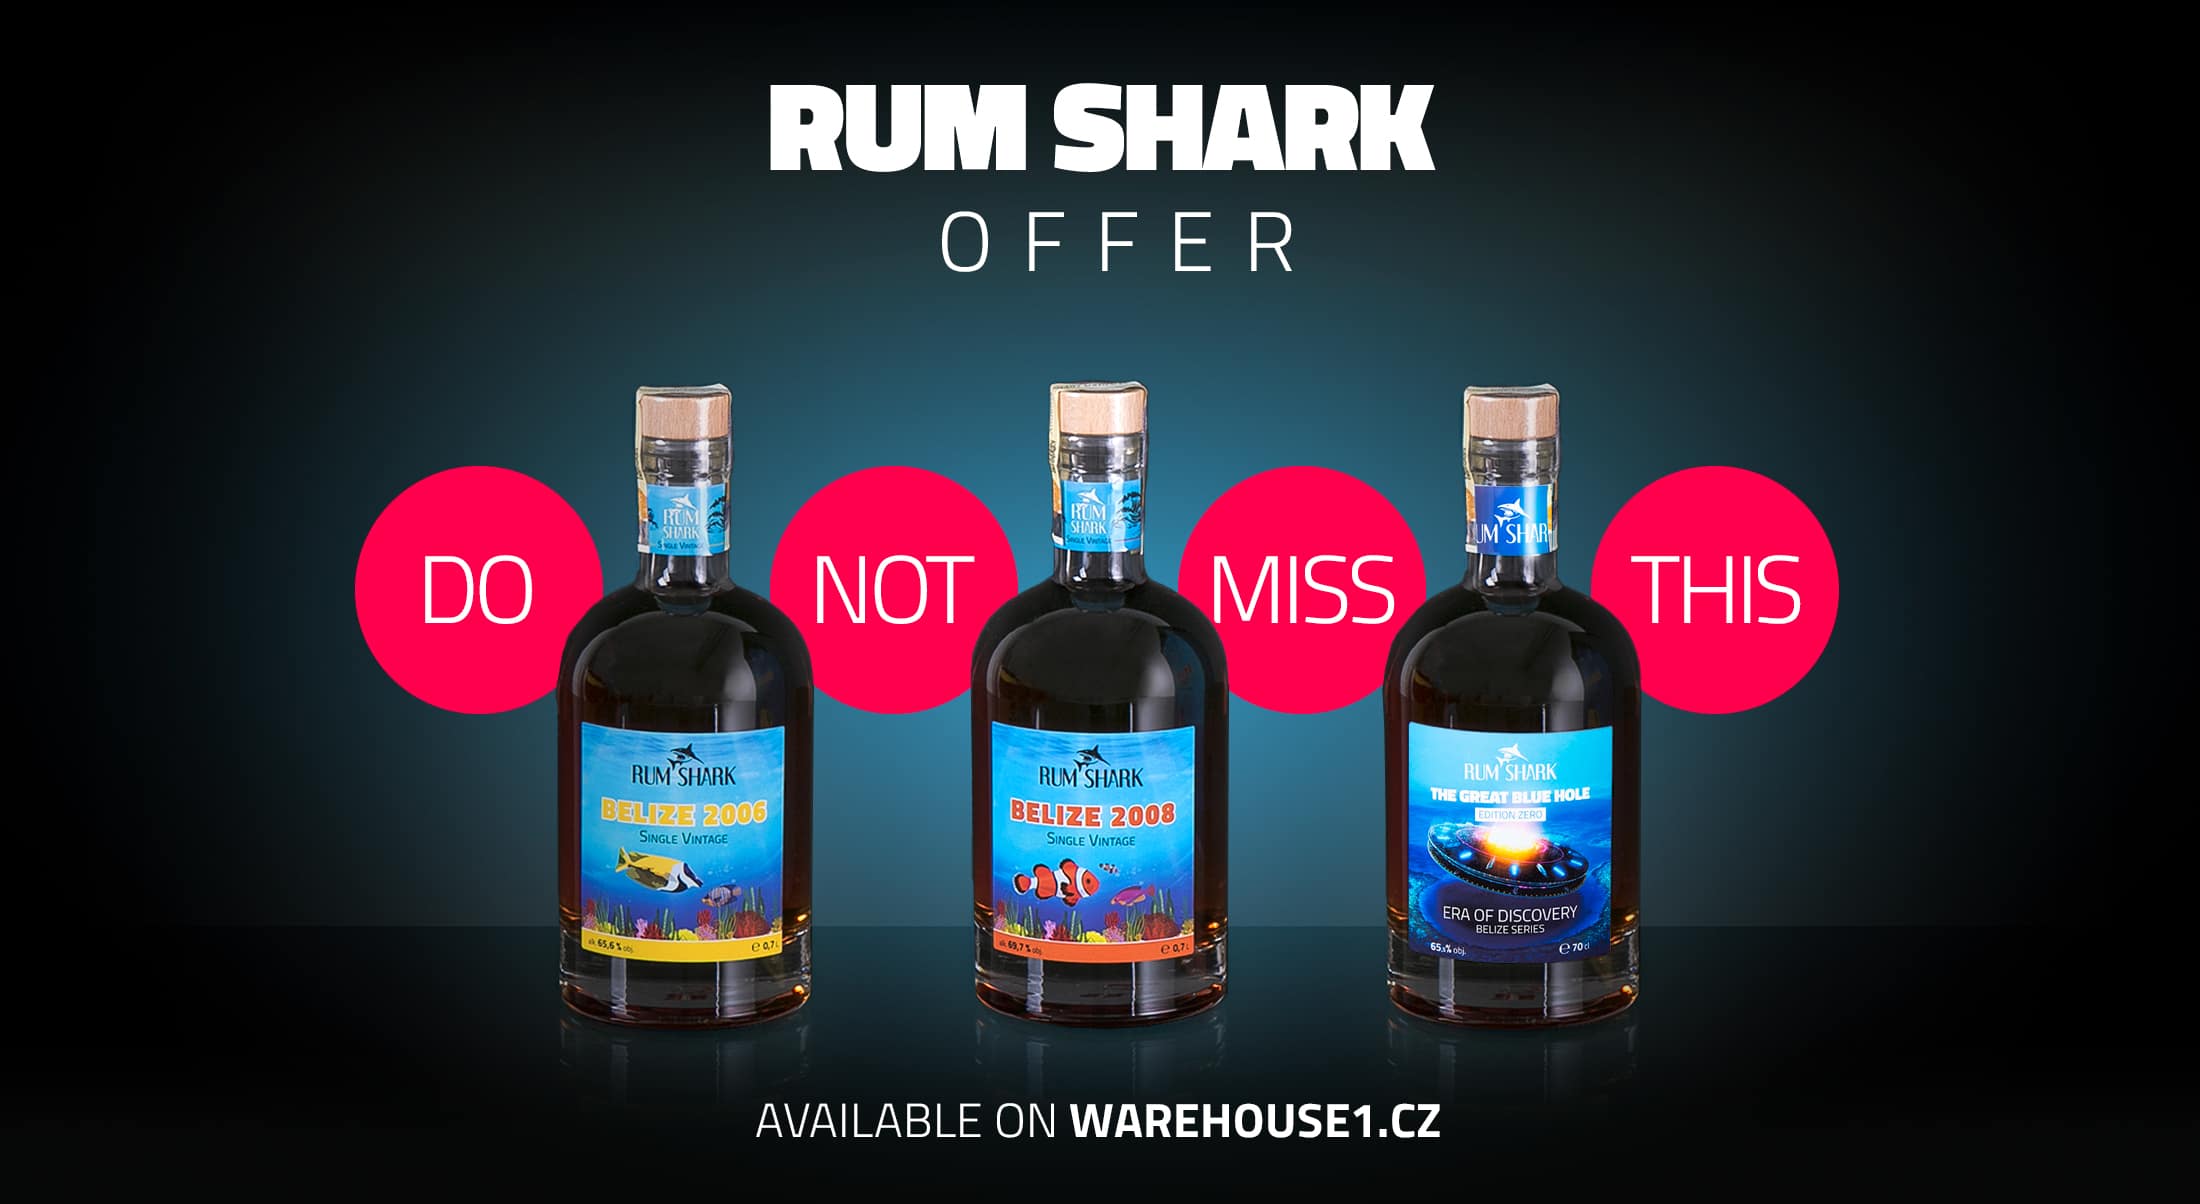 RUM SHARK offer on Warehouse #1